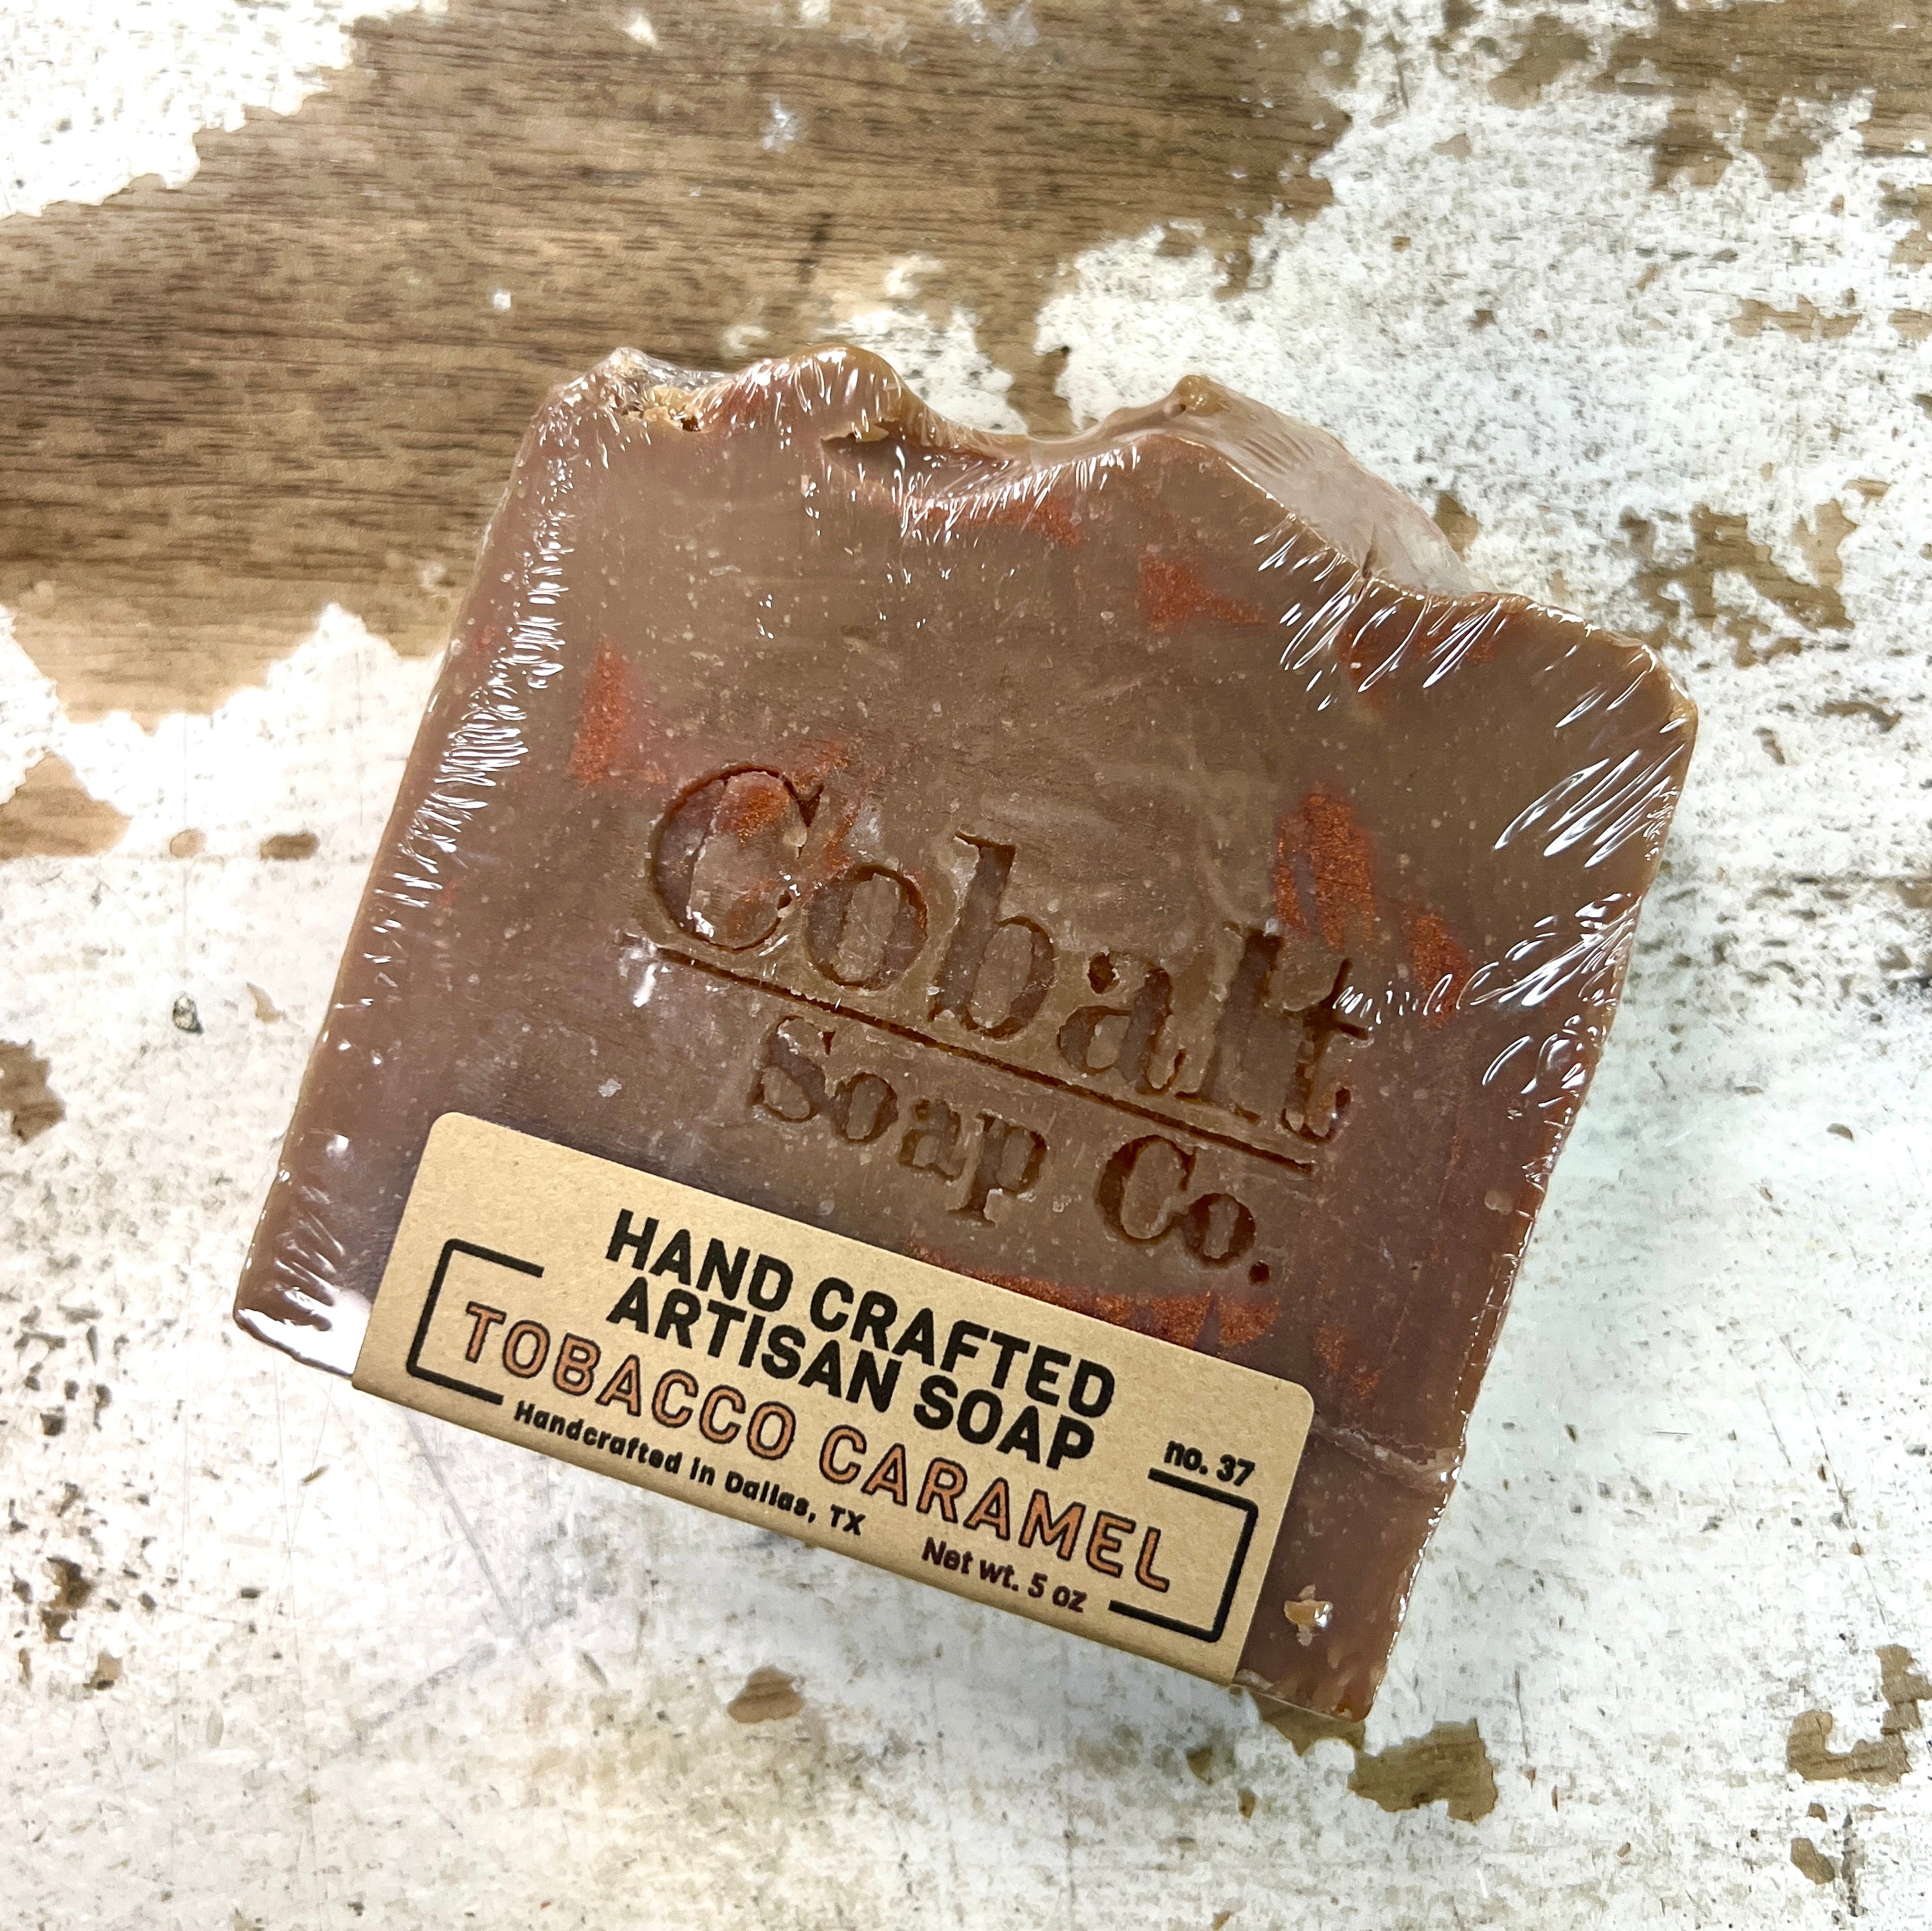 Cobalt Soap Co. - Tobacco Caramel Soap